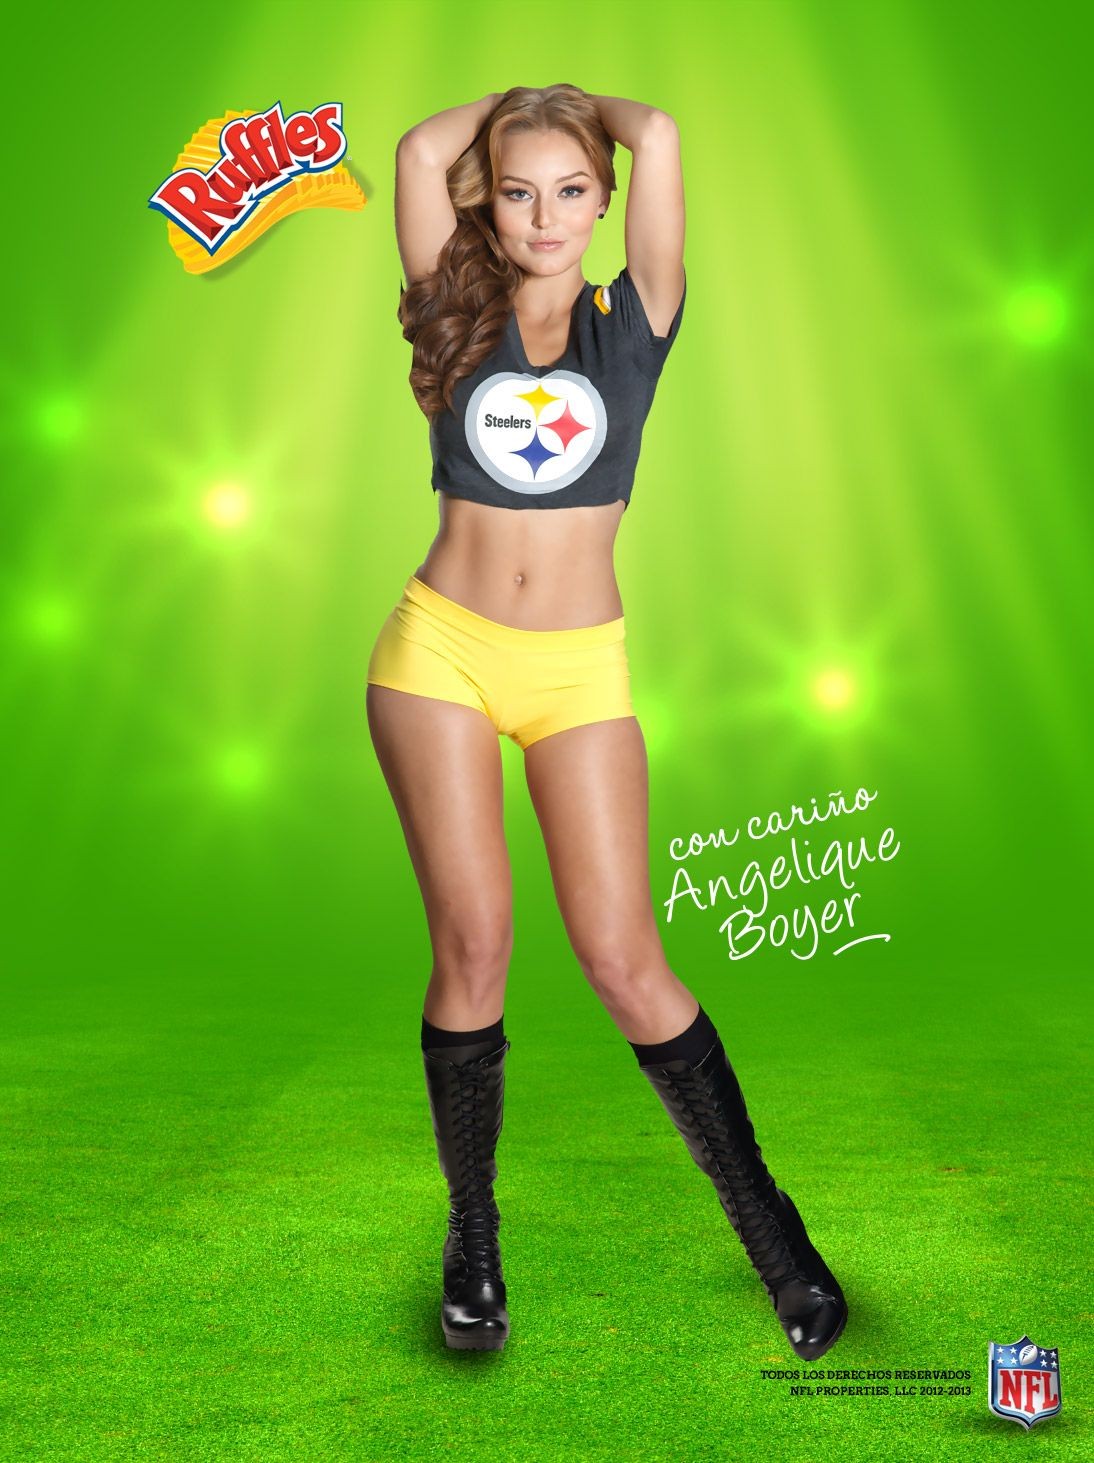 Angelique boyer en sosies de maillots sexy dans des promos de la NFL
 #75243048